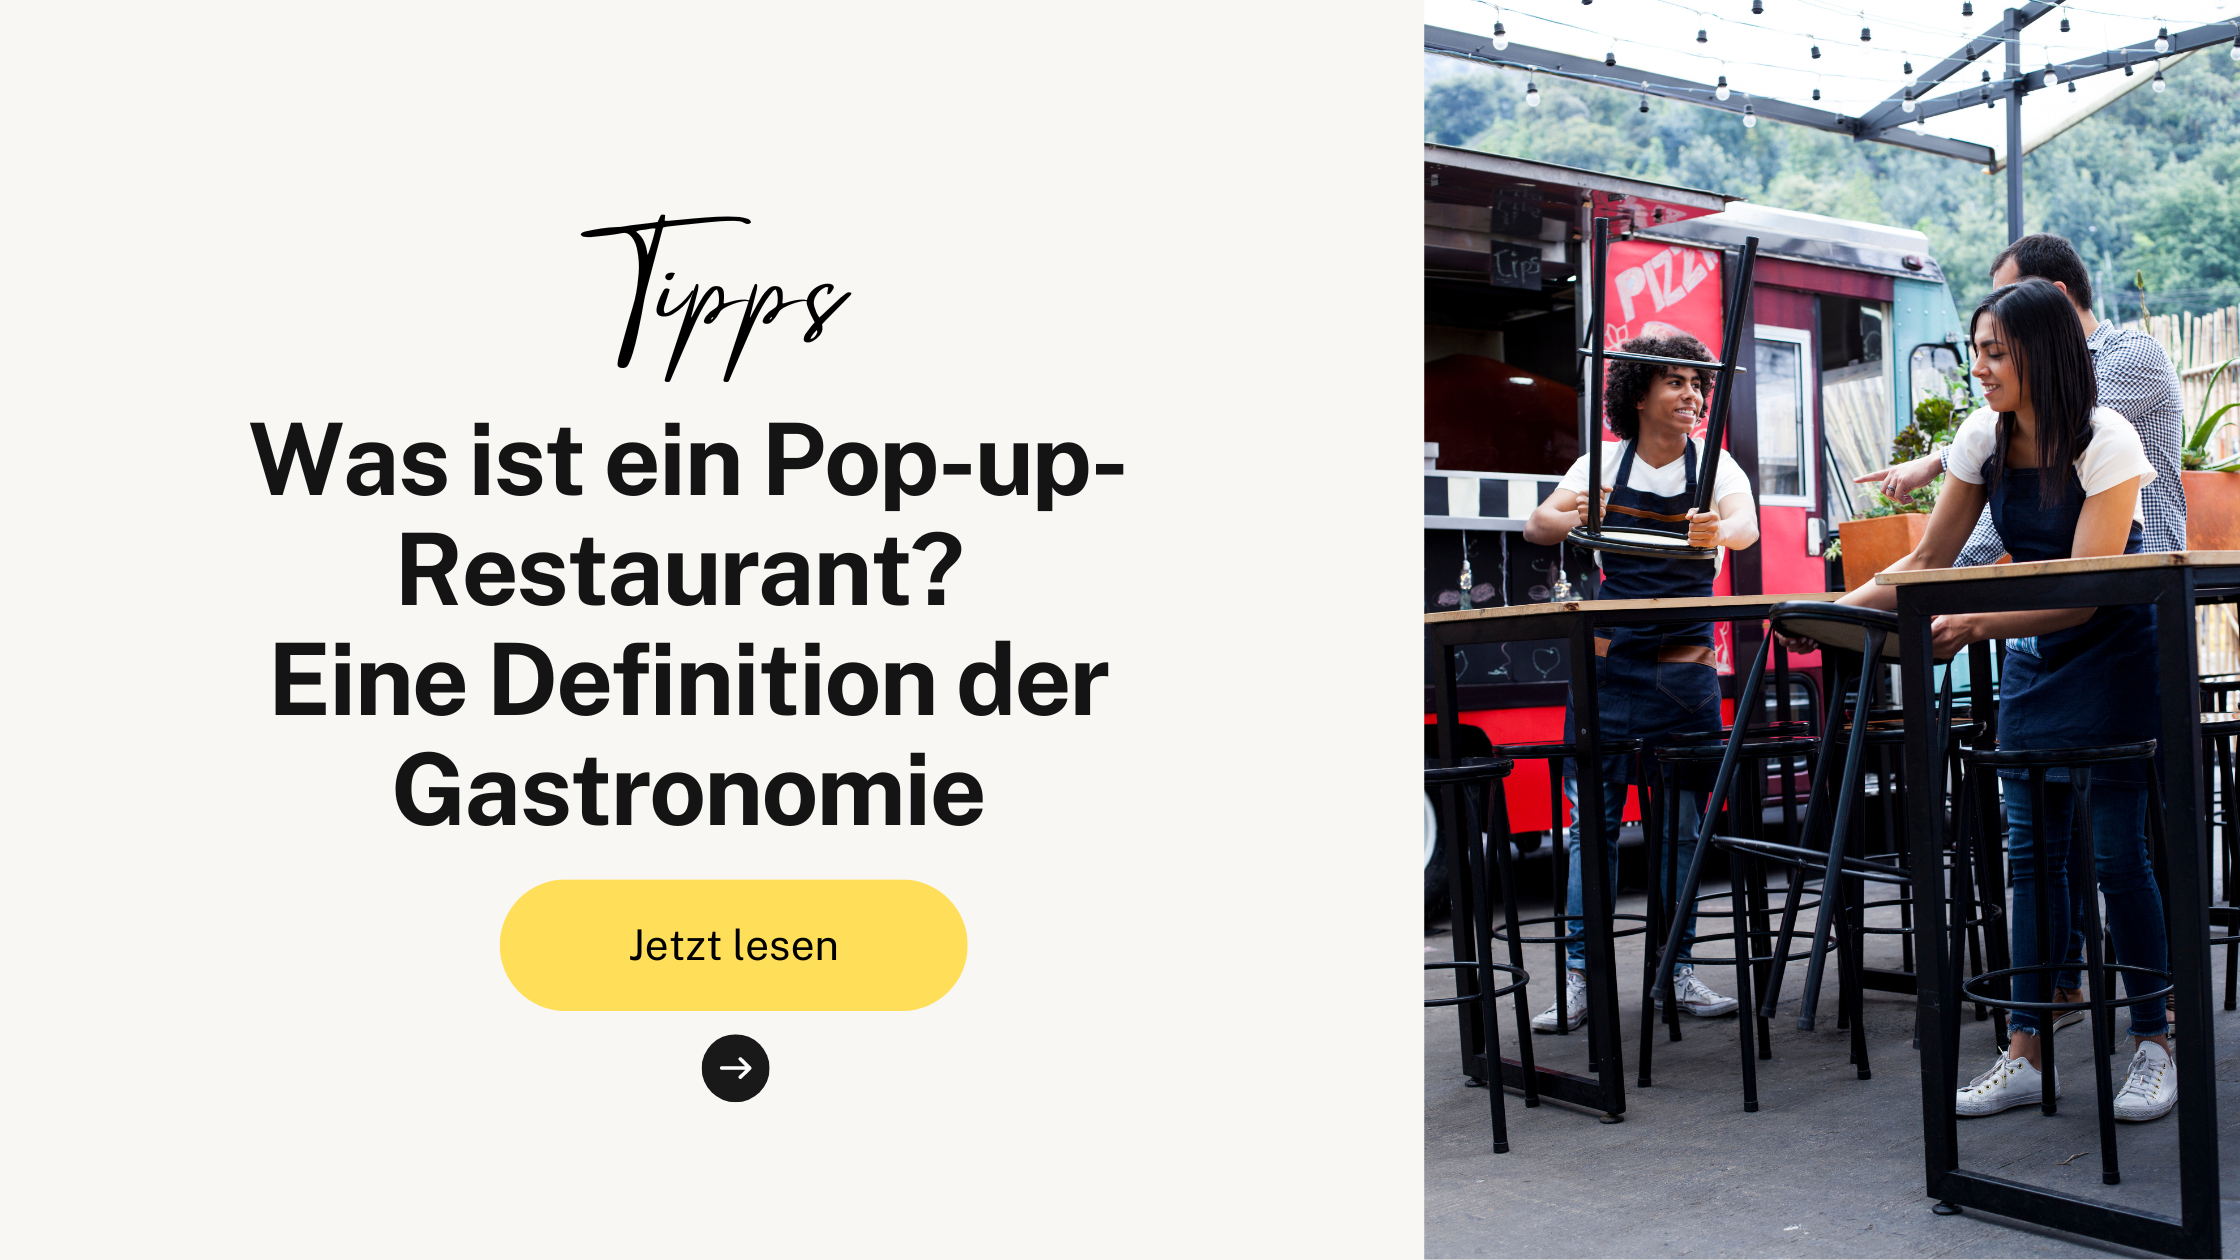 Was ist ein Pop-up-Restaurant? Eine Definition der Gastronomie